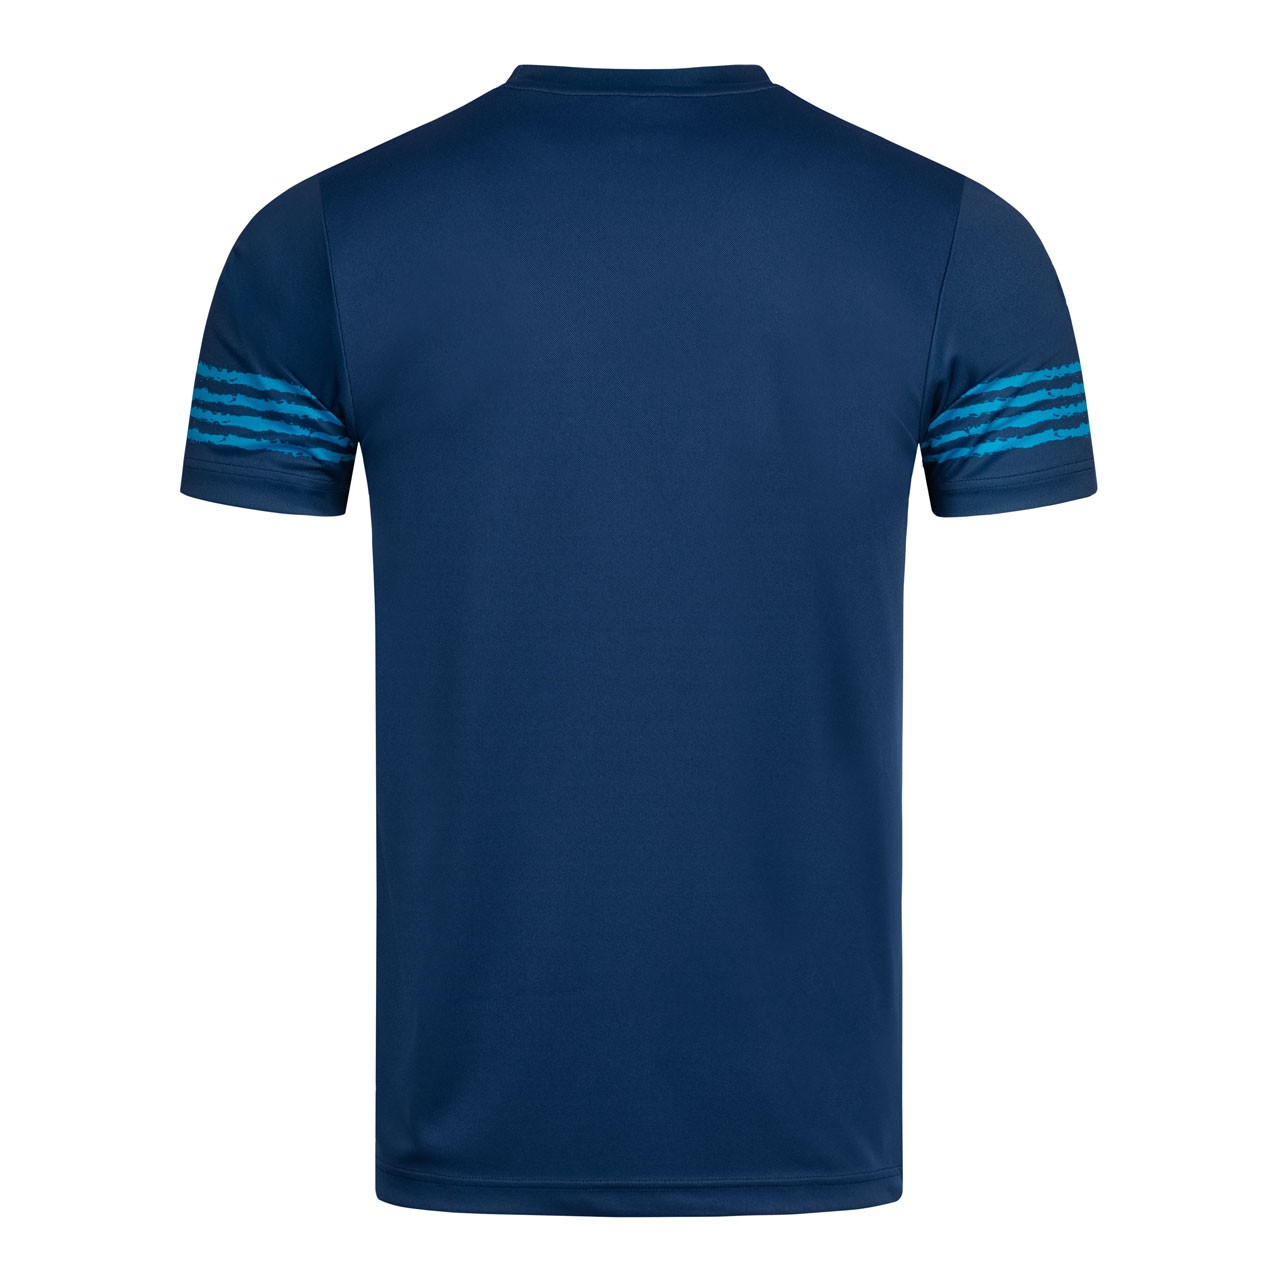 Donic Shirt Libra navy/cyan blue | Tabletennis11.com (TT11)